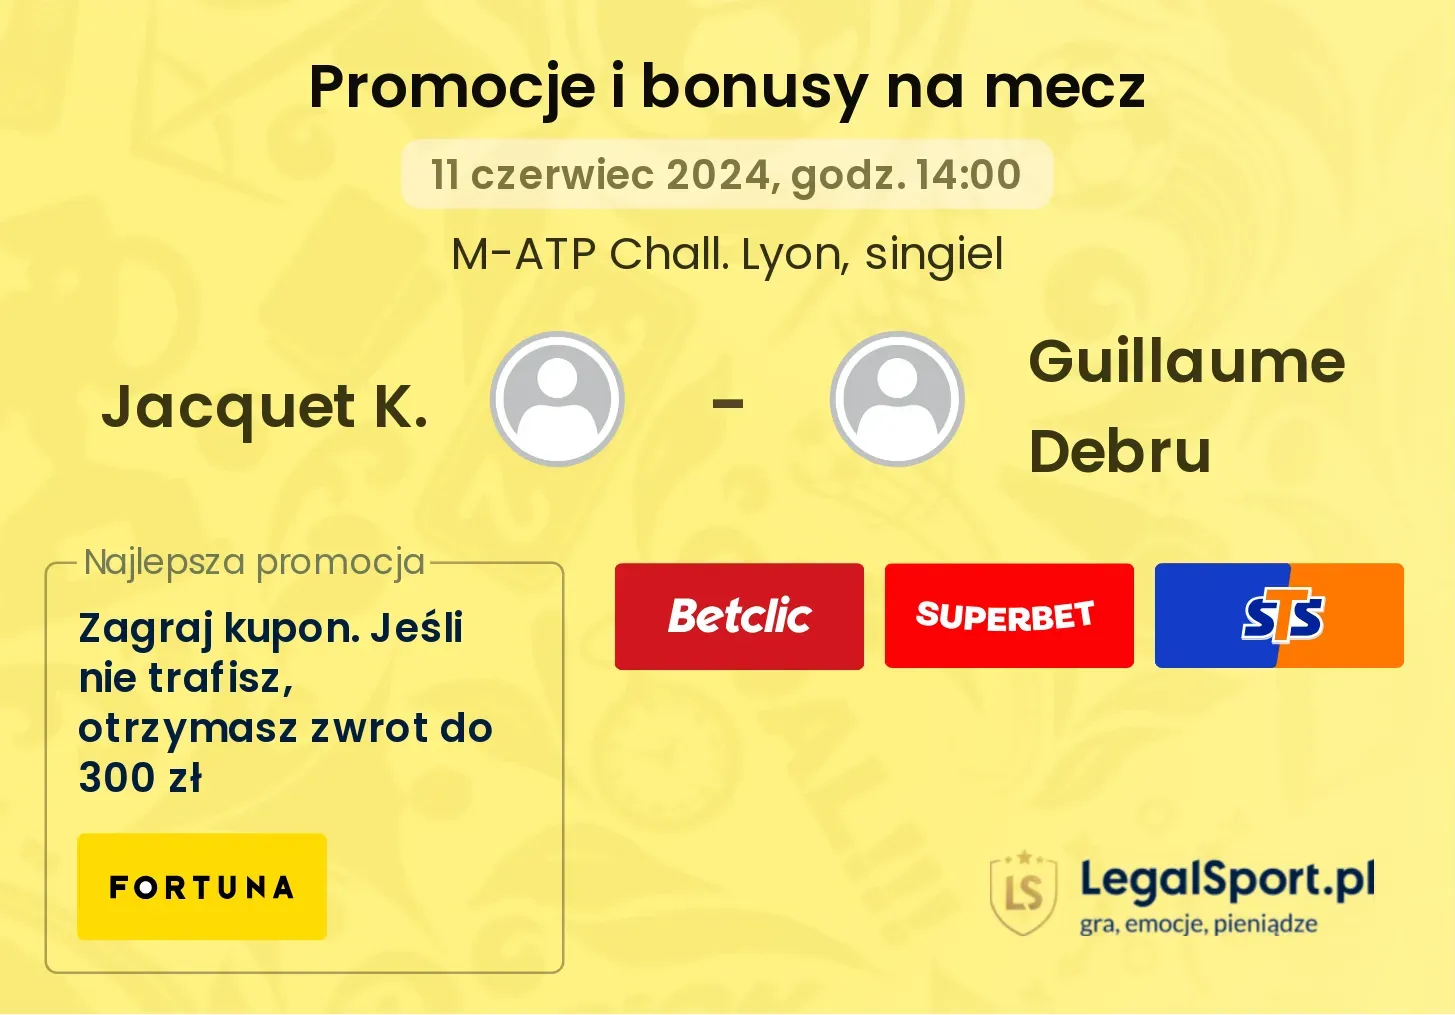 Jacquet K. - Guillaume Debru promocje bonusy na mecz